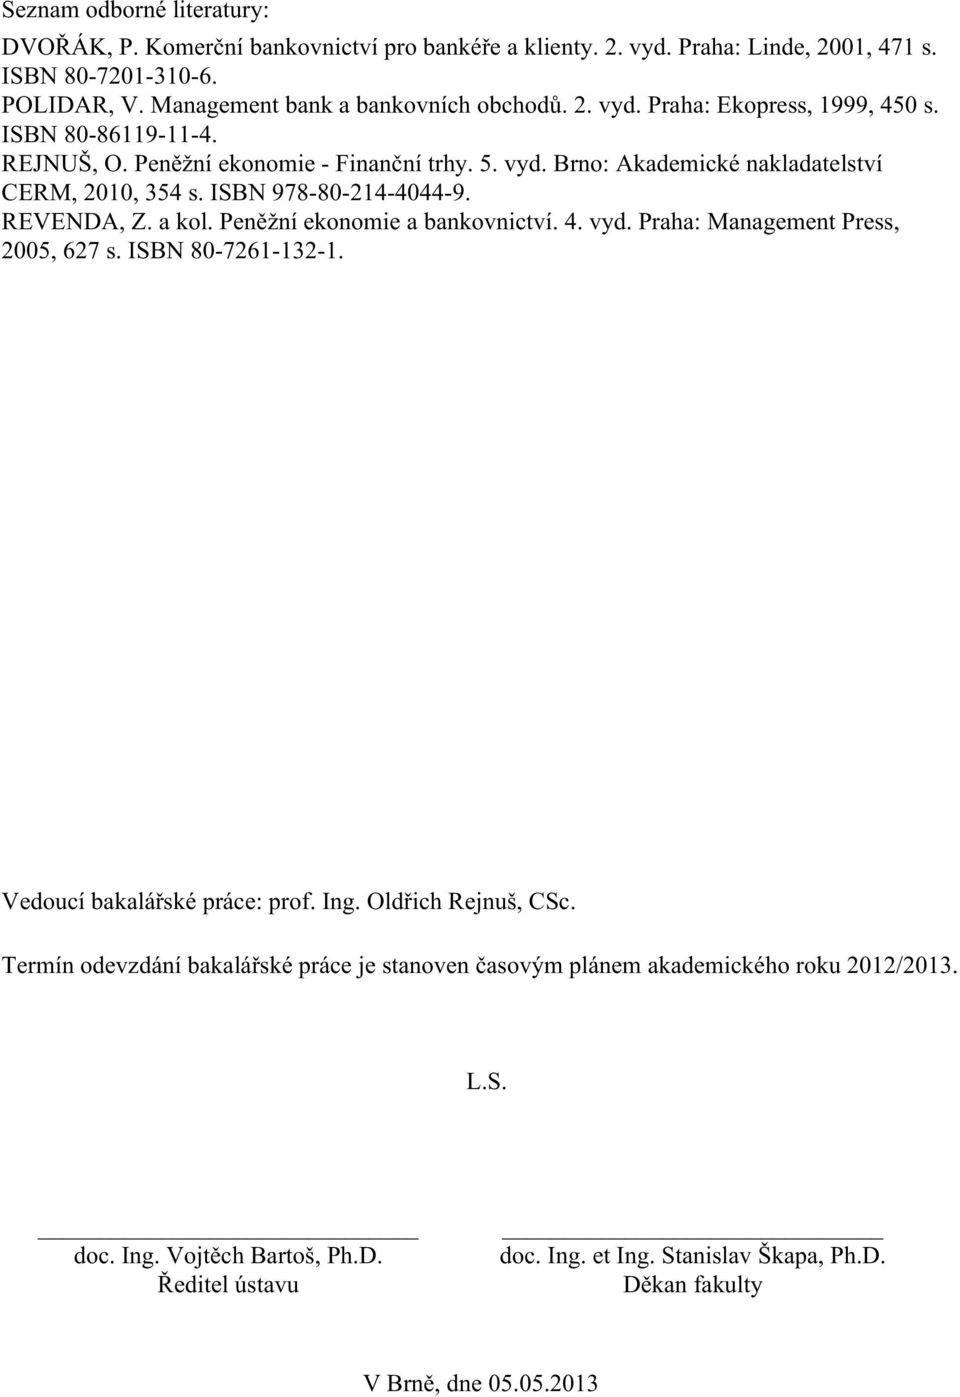 Peněžní ekonomie a bankovnictví. 4. vyd. Praha: Management Press, 2005, 627 s. ISBN 80-7261-132-1. Vedoucí bakalářské práce: prof. Ing. Oldřich Rejnuš, CSc.